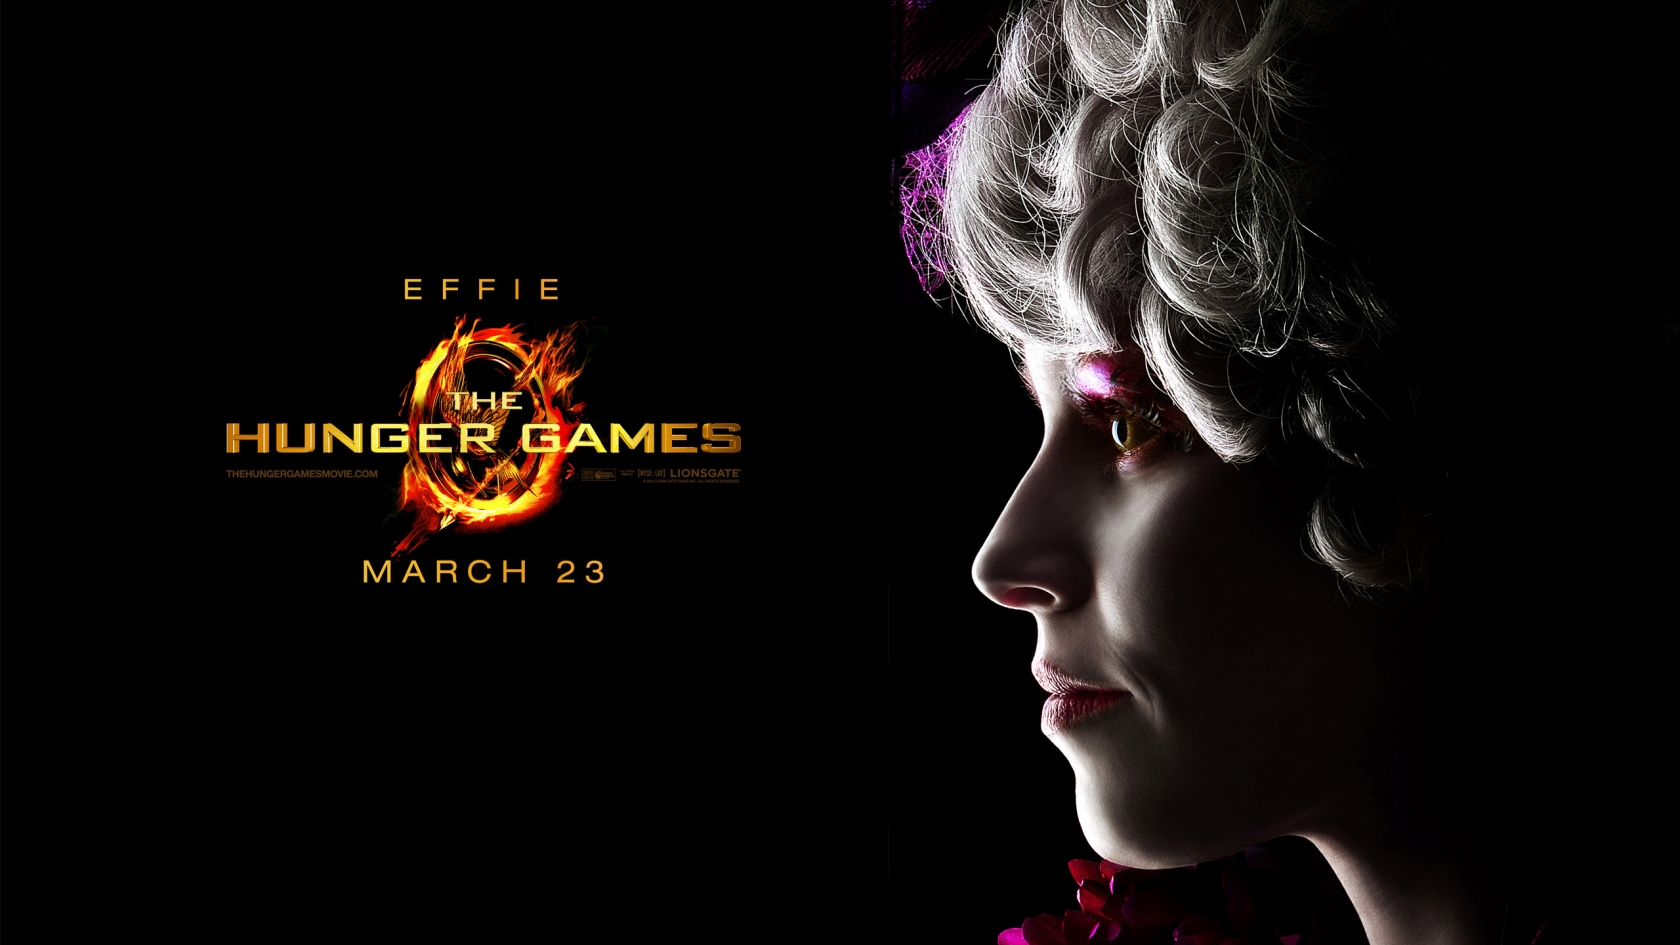 The Hunger Games Effie for 1680 x 945 HDTV resolution